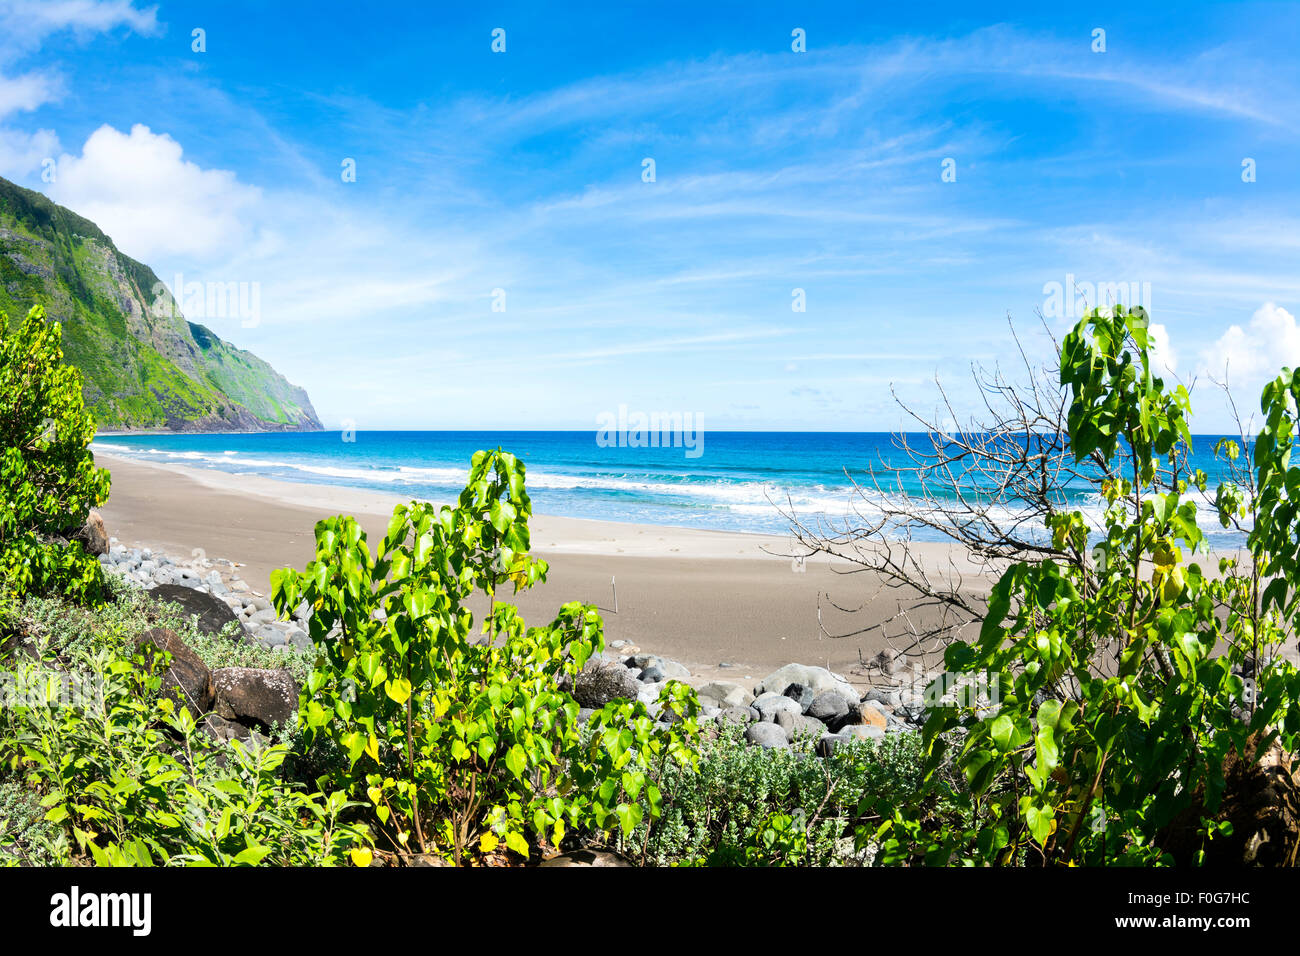 Blick auf einen tropischen Strand von der Deckung des lebendigen, grünen Laub Stockfoto